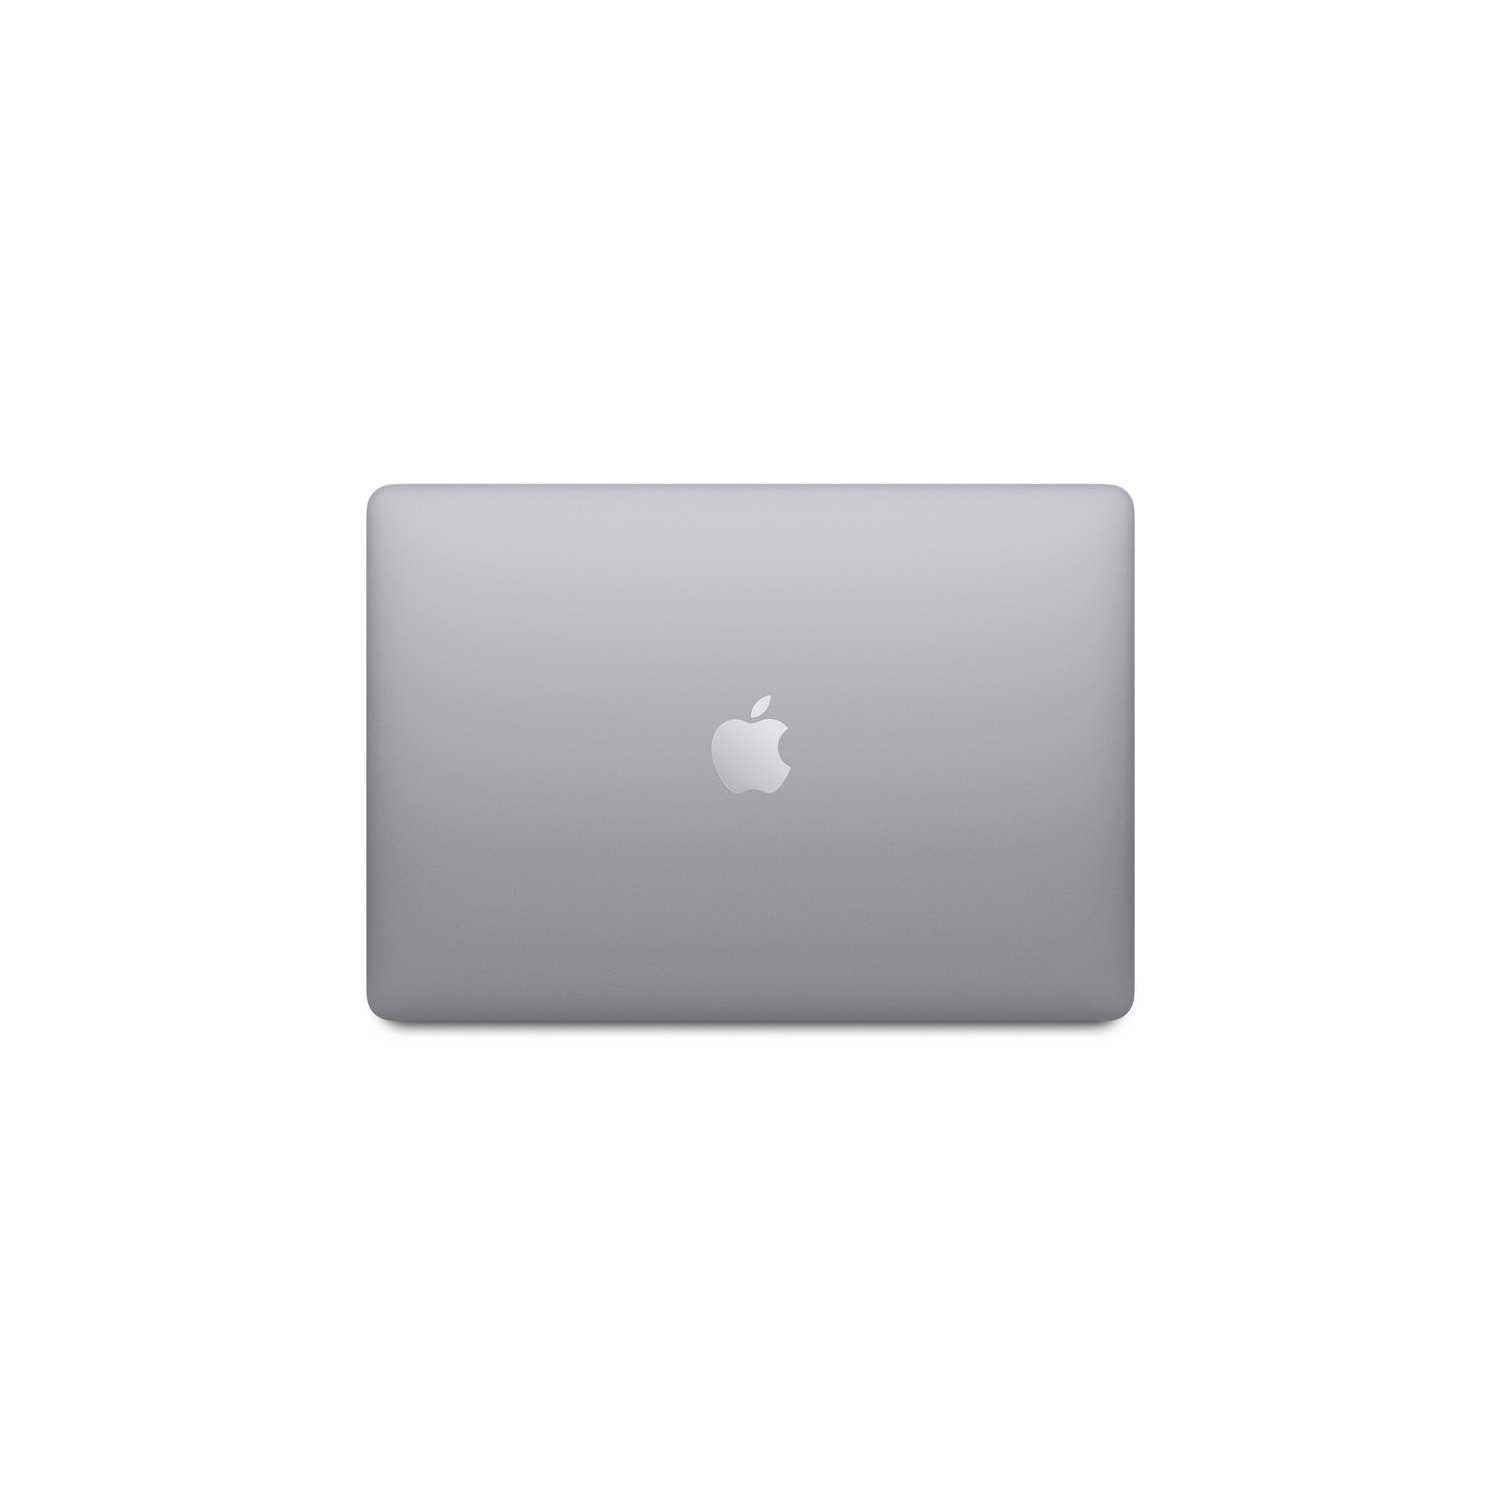 MacBook Air contre MacBook Pro 13 : le rematch de l'autonomie